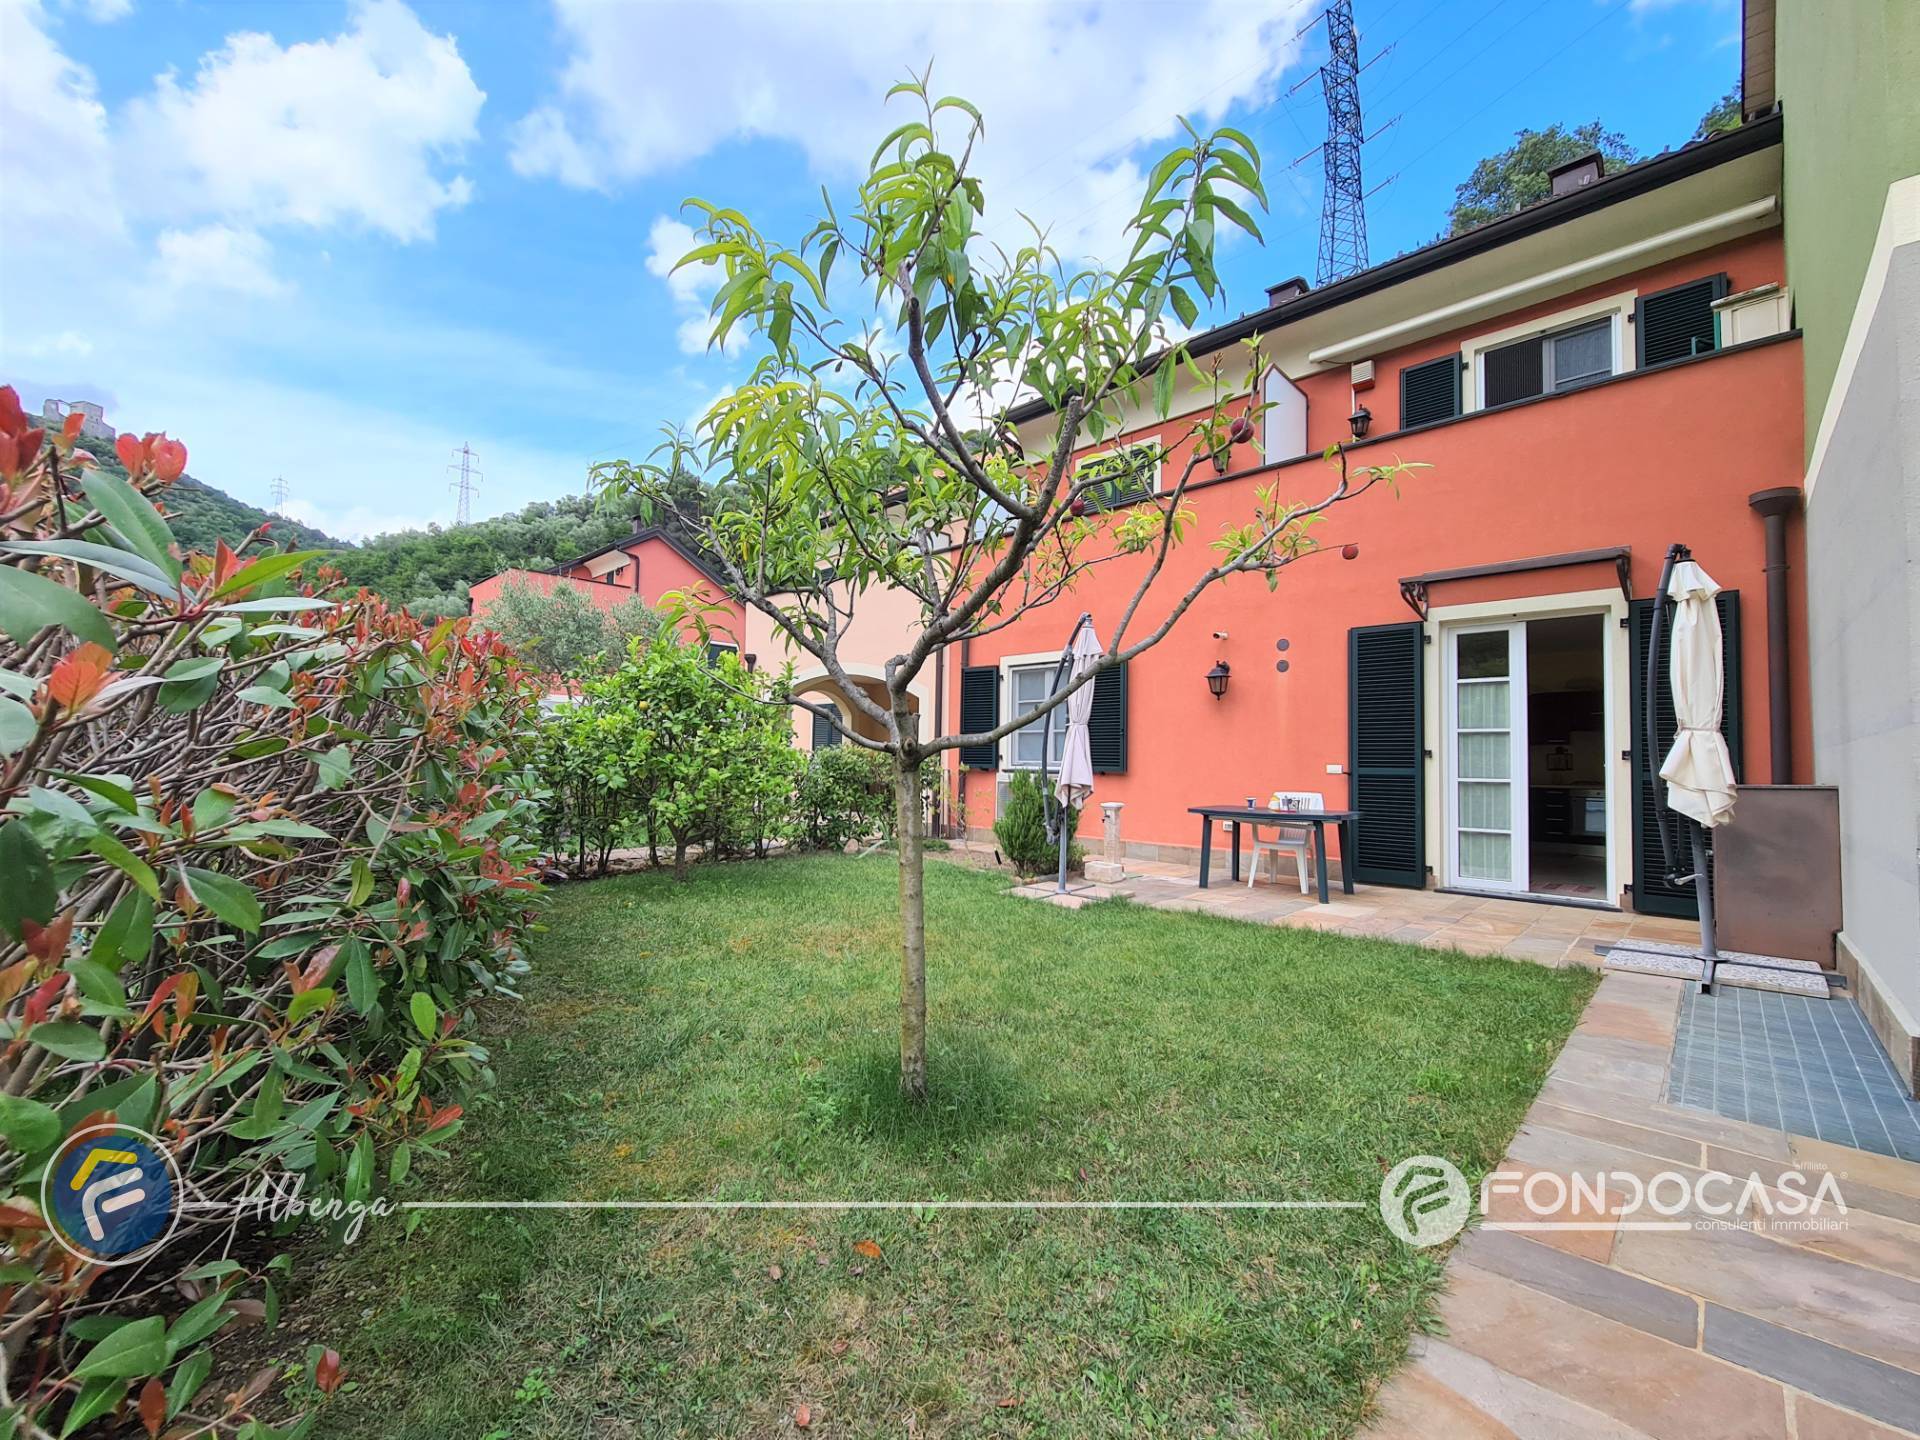 Appartamento in vendita a Zuccarello, 3 locali, prezzo € 158.000 | CambioCasa.it